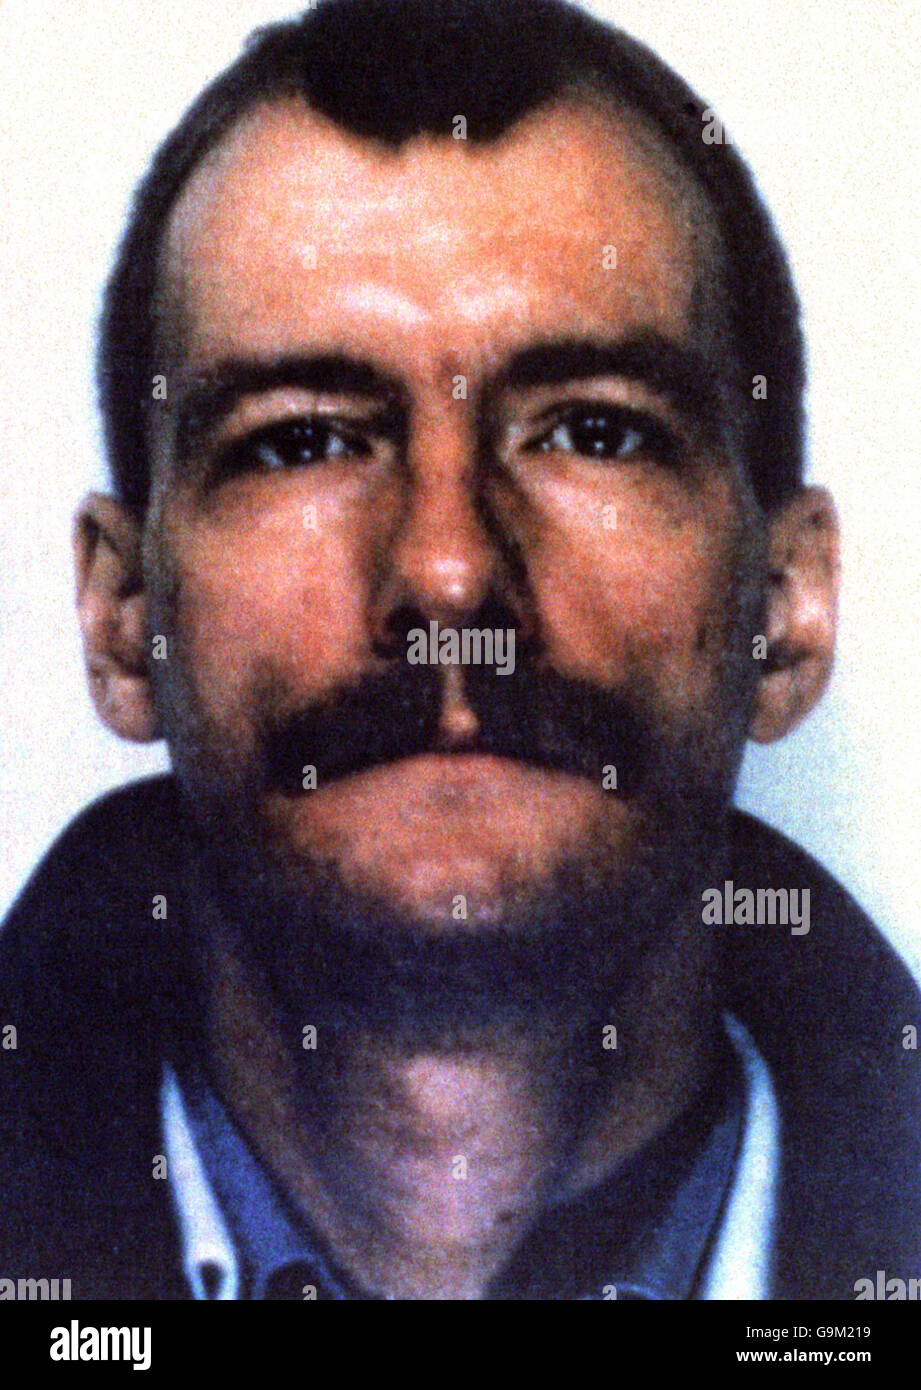 Mord An Andrew Collier. Andrew Collier, schwuler Mörder, Opfer eines Serienmörder-Angriffs im Londoner Raum. Stockfoto